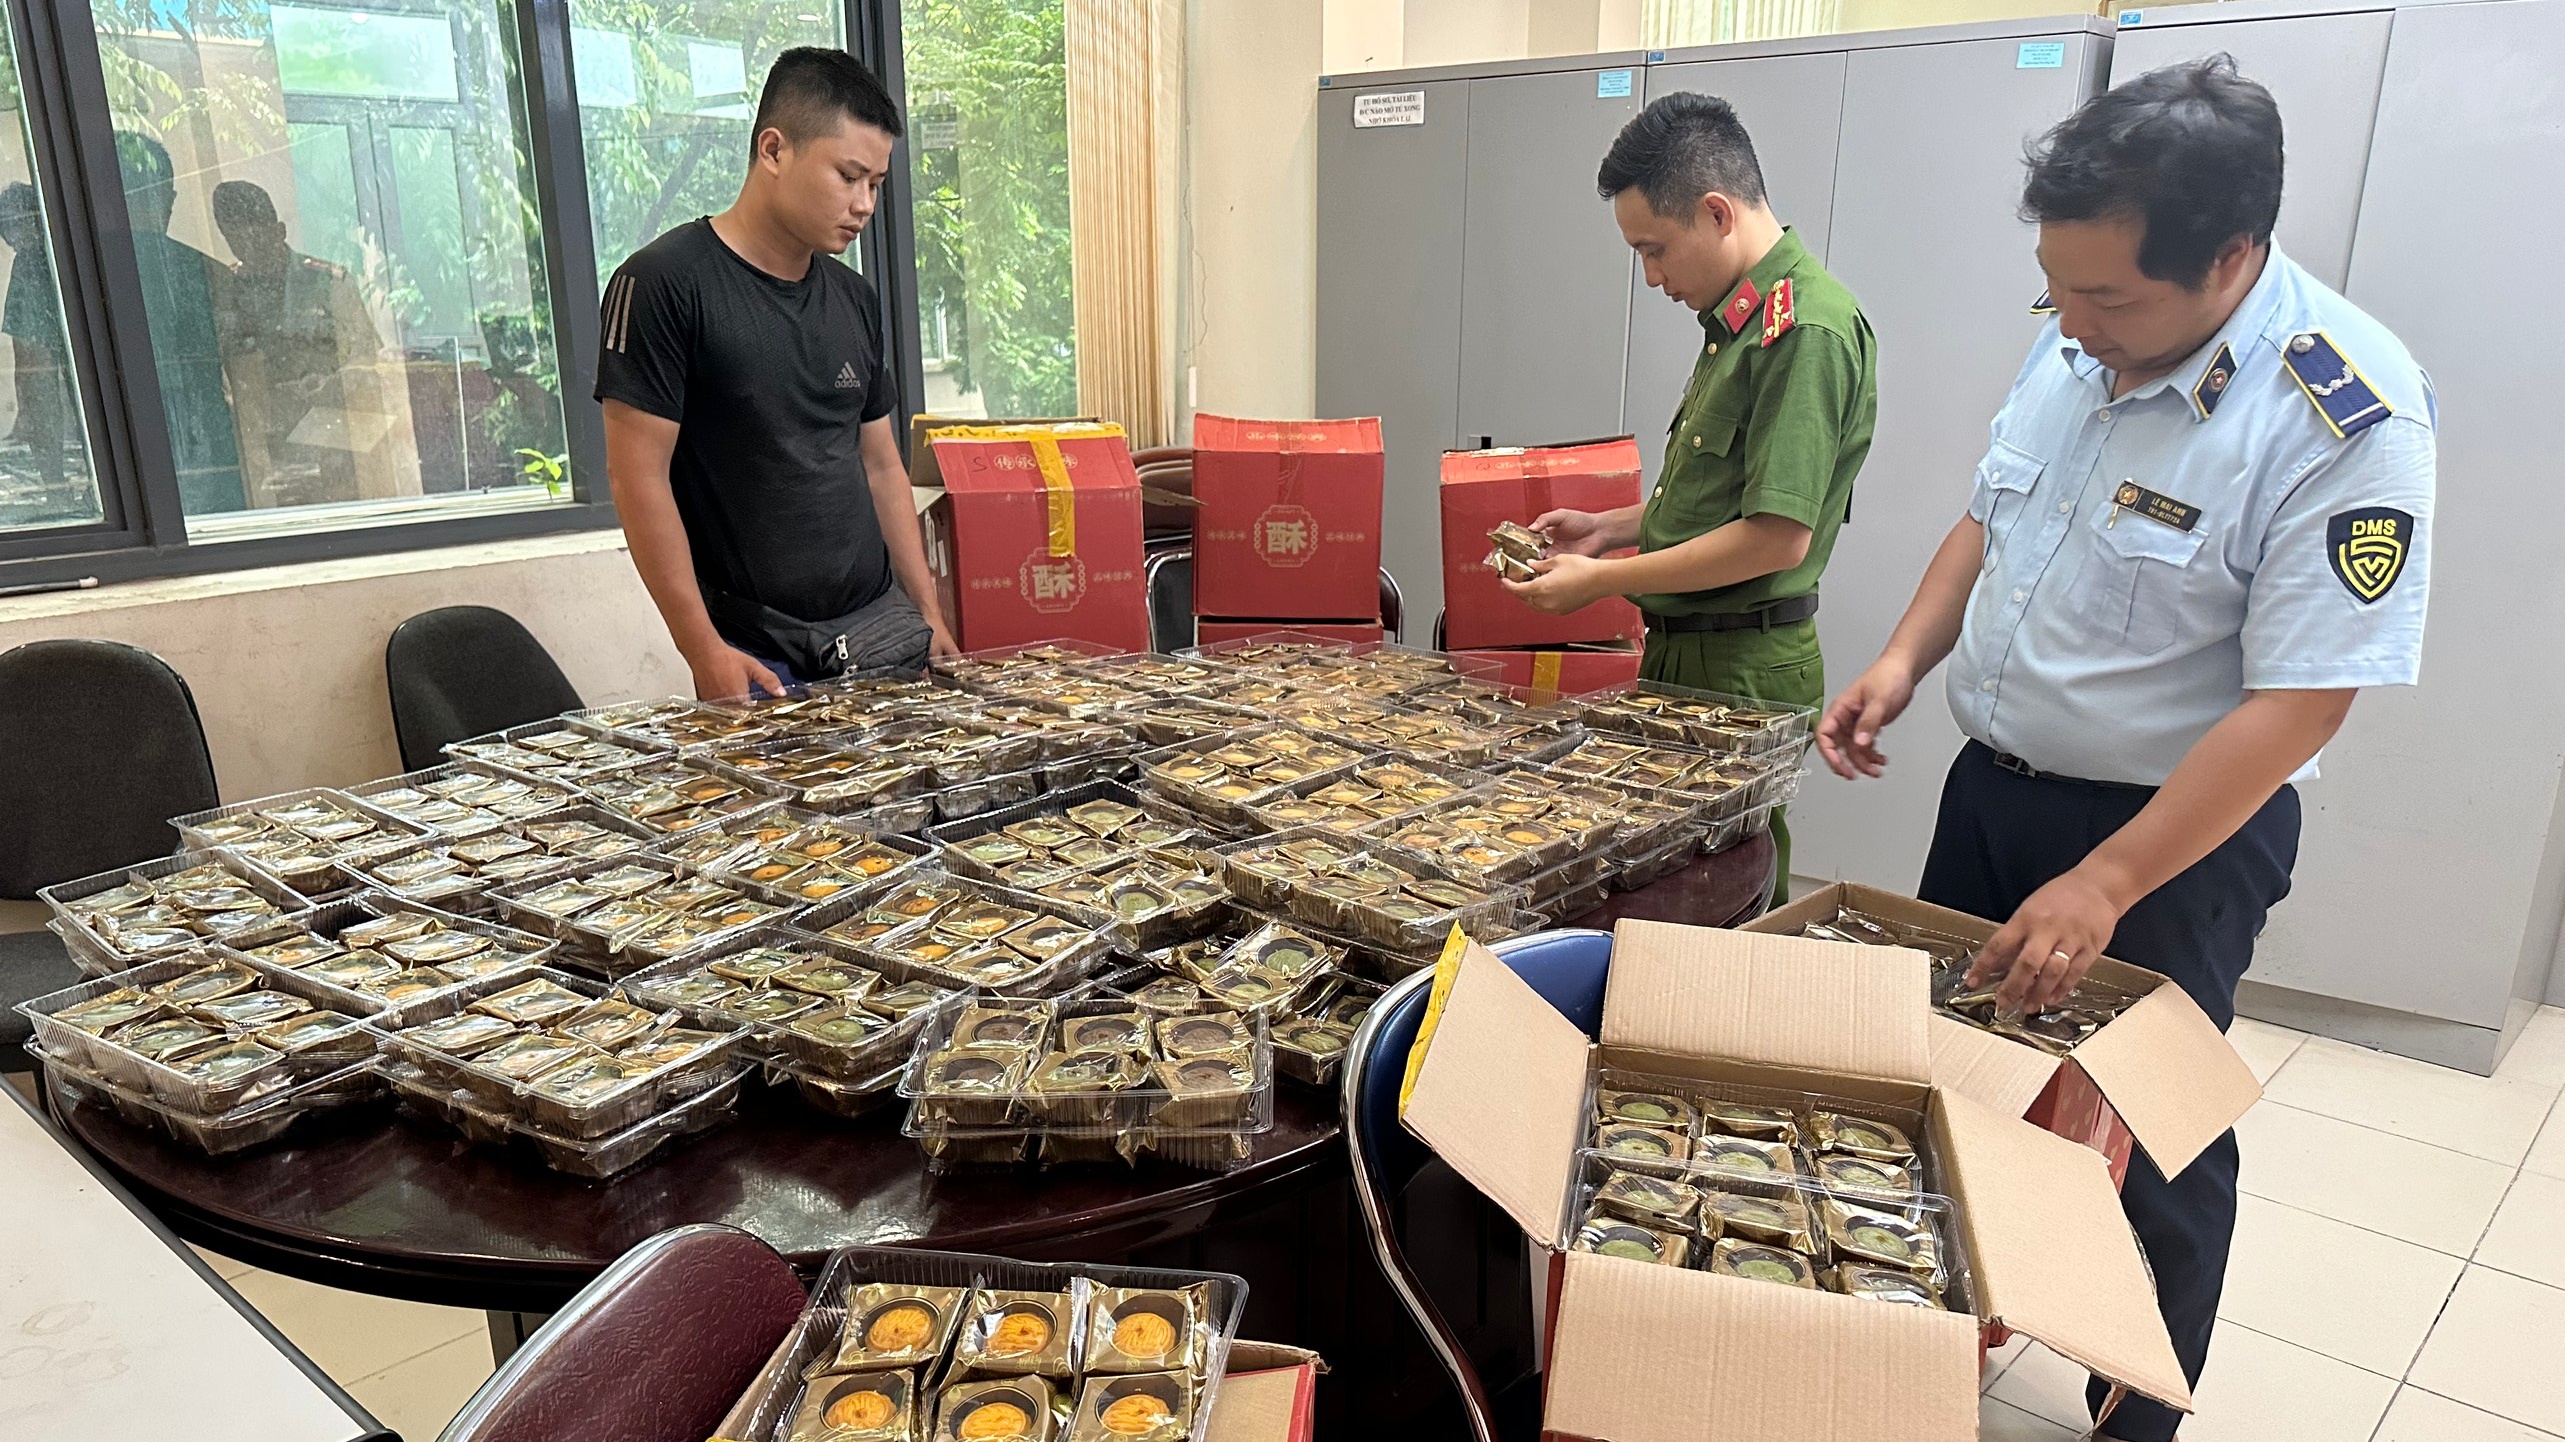 Quản lý thị trường Hà Nội: Phát hiện, tạm giữ trên 800 chiếc bánh trung thu không rõ nguồn gốc, xuất xứ 